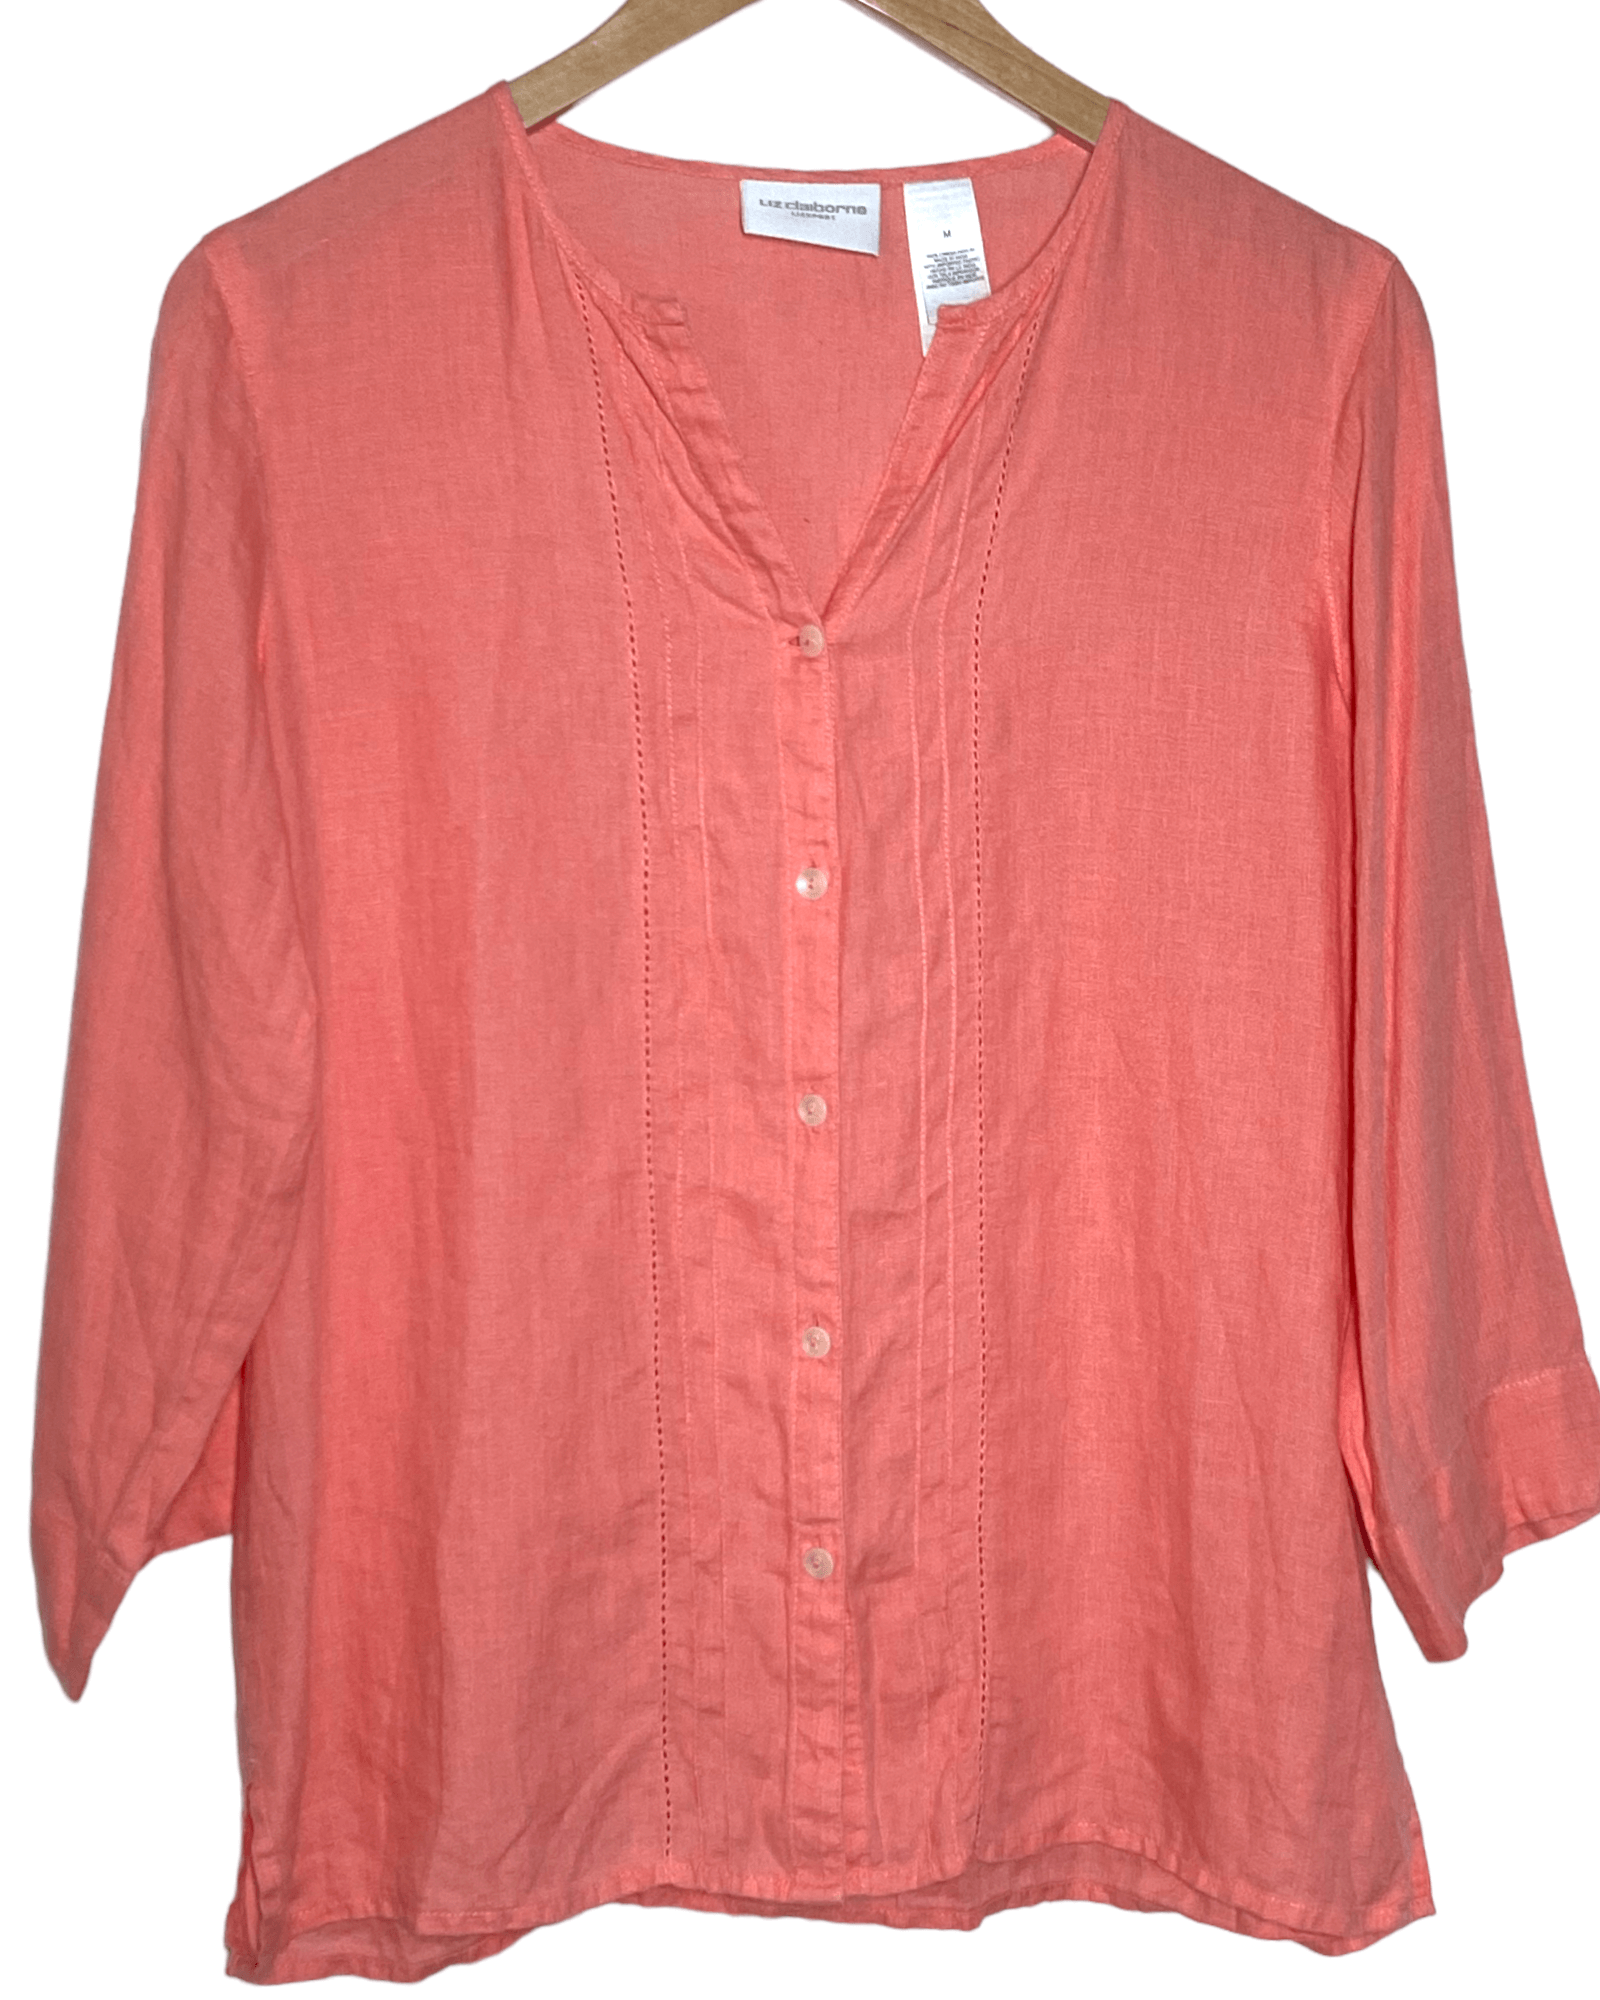 Light Spring LIZ CLAIBORNE pink linen button-up shirt